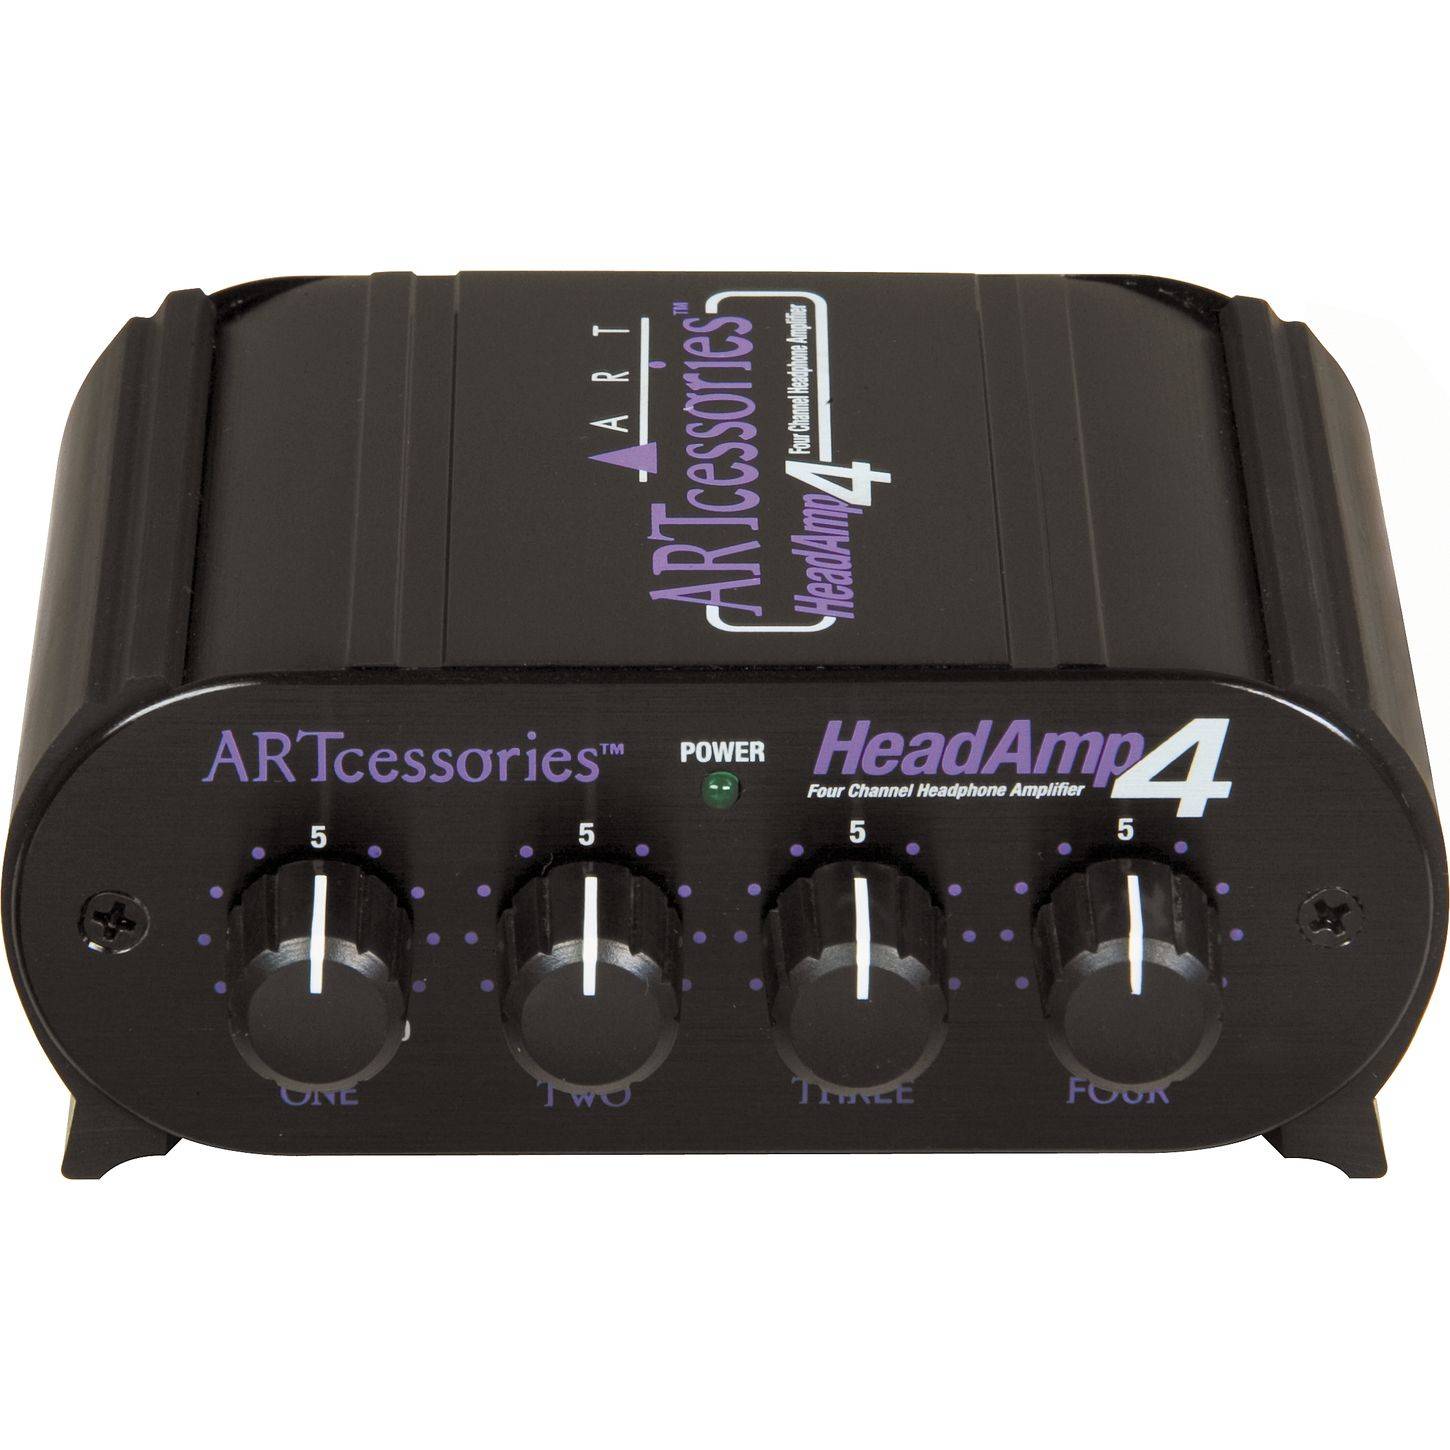 ART HeadAMP4 усилитель-распределитель для 4 наушников, компактный